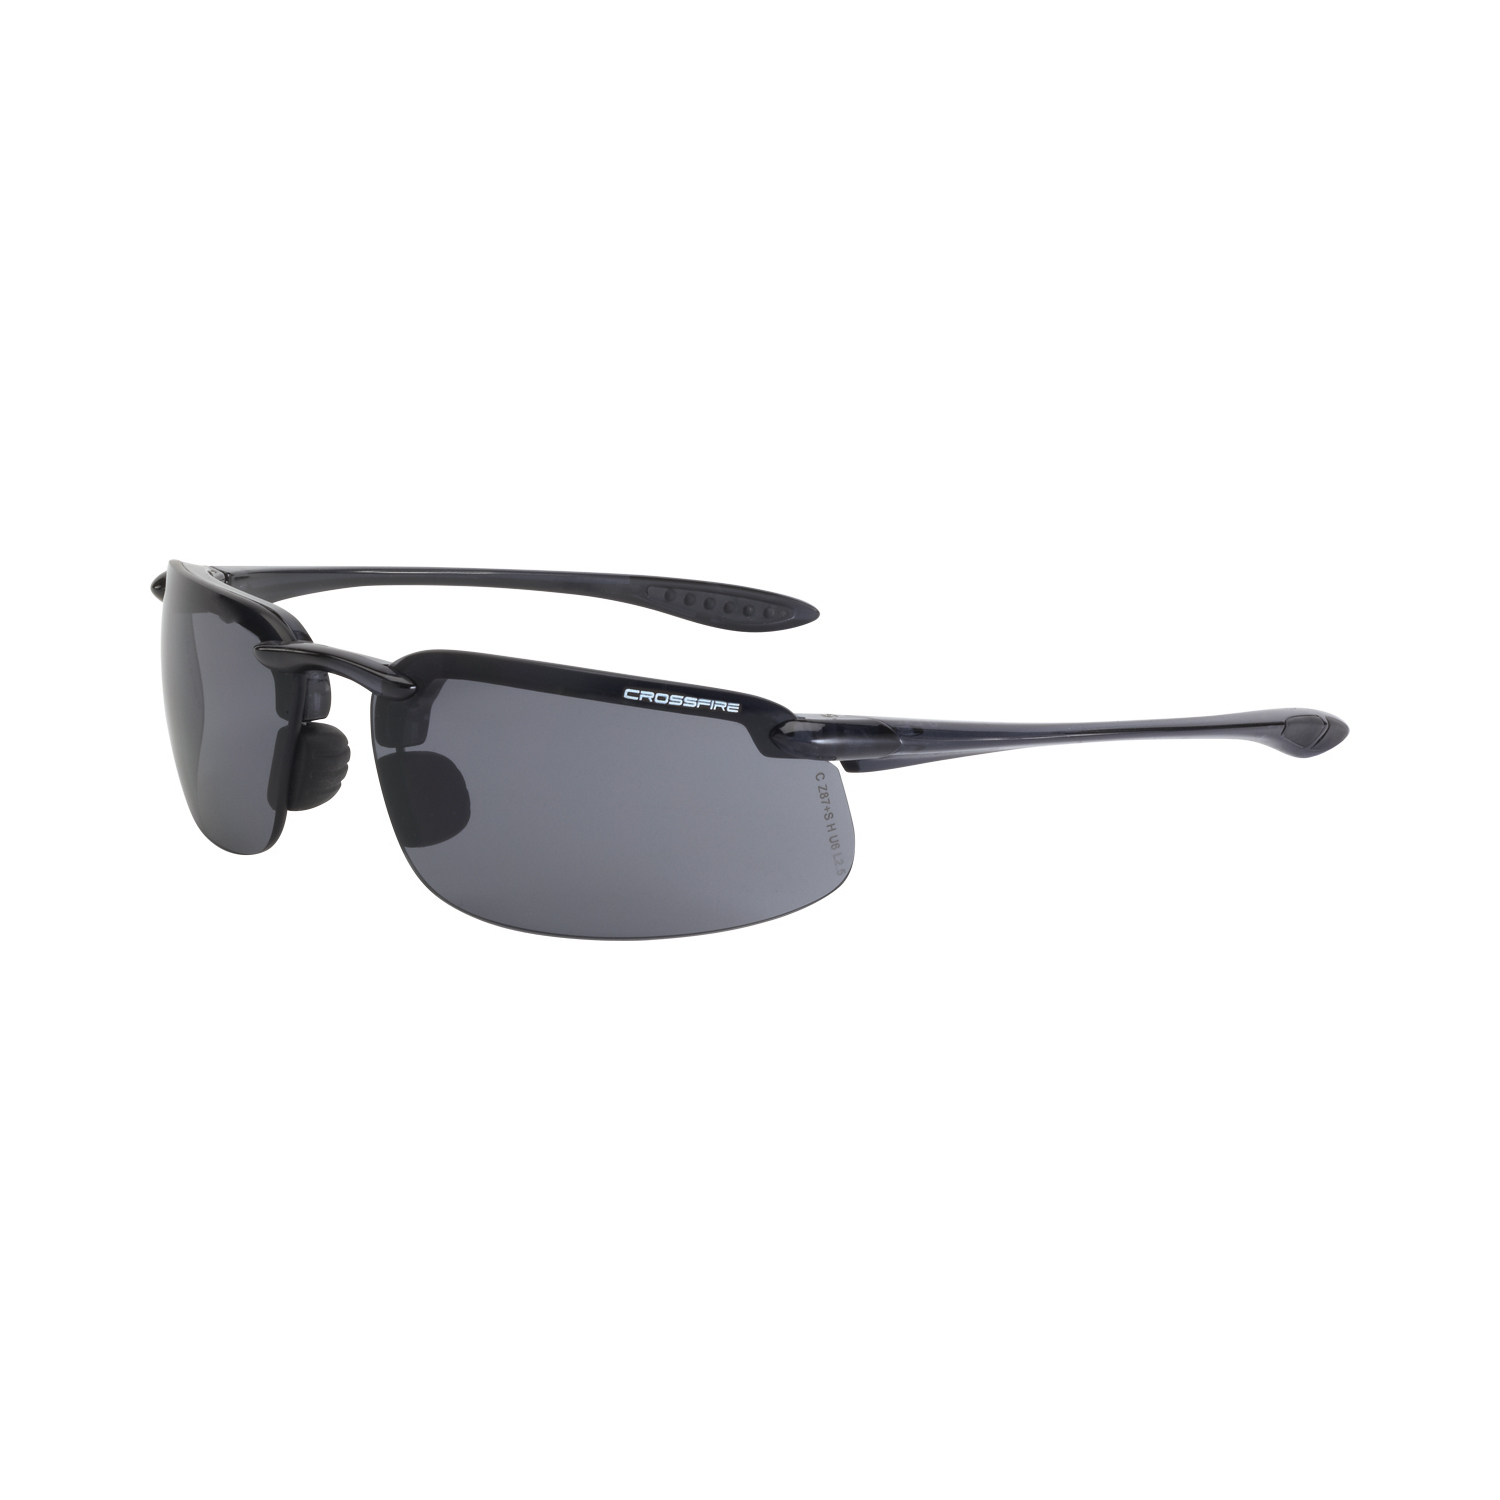 ES4 Premium Safety Eyewear - Crystal Black Frame - Smoke Lens - Tinted Lens